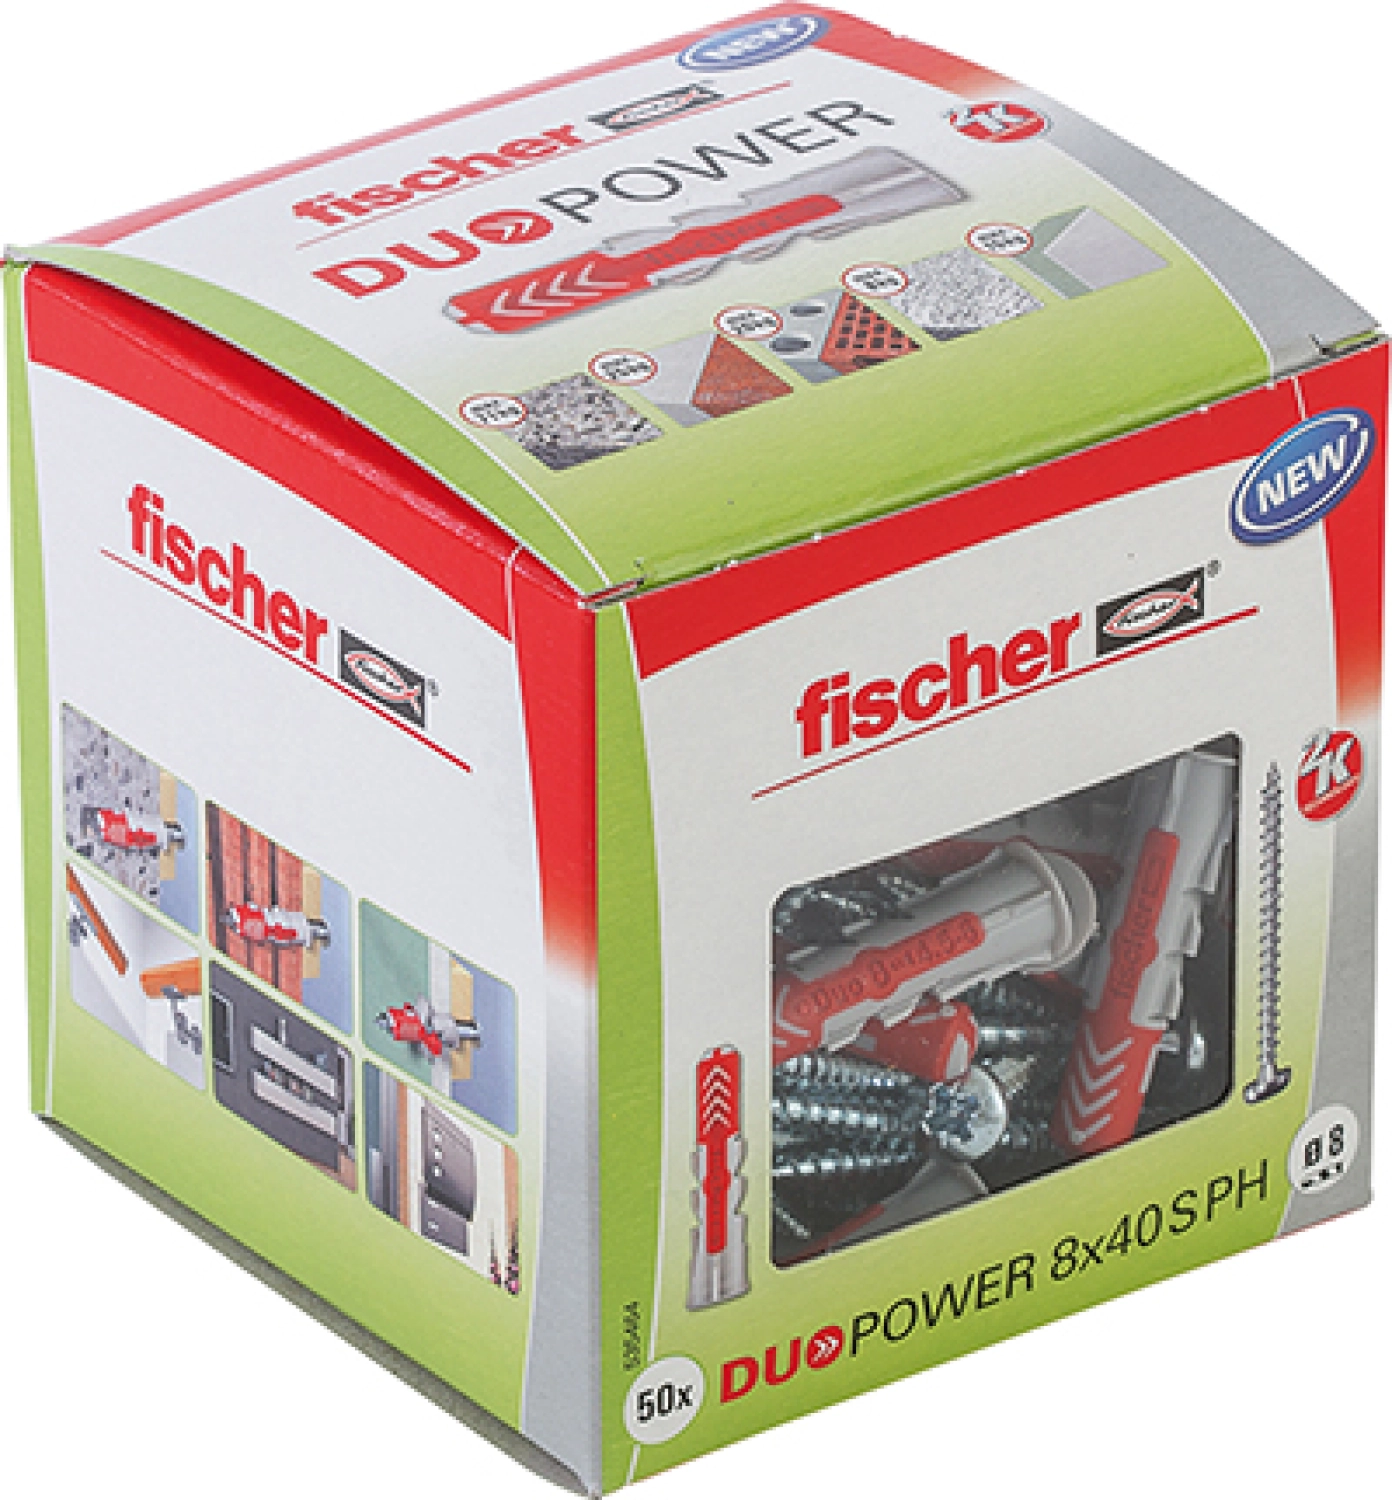 fischer 535464 - Cheville bi-matière DuoPower 8 x 40 PH avec vis (50pcs) DuoPower 8 x 40 S PH